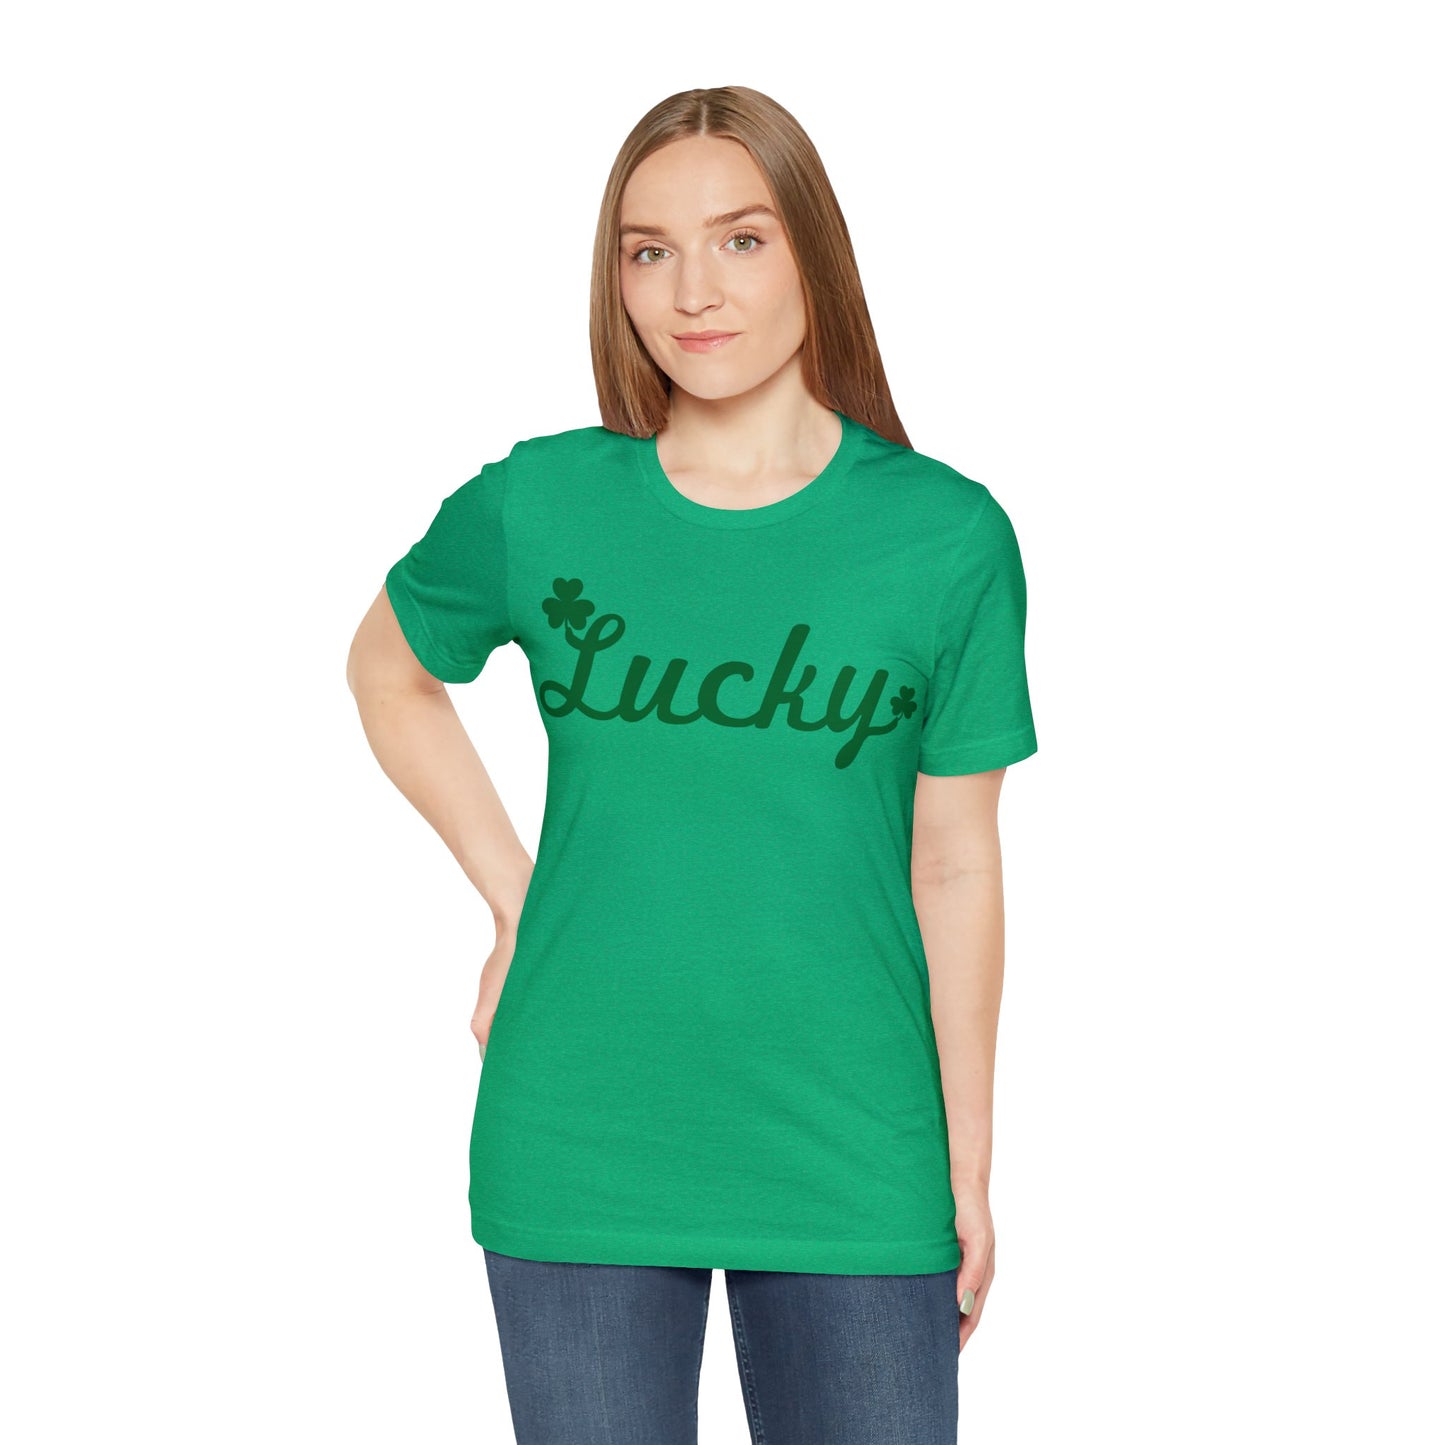 Feeling Lucky Shirt Clover Shirt St Patrick's Day Shirt Irish Shirt